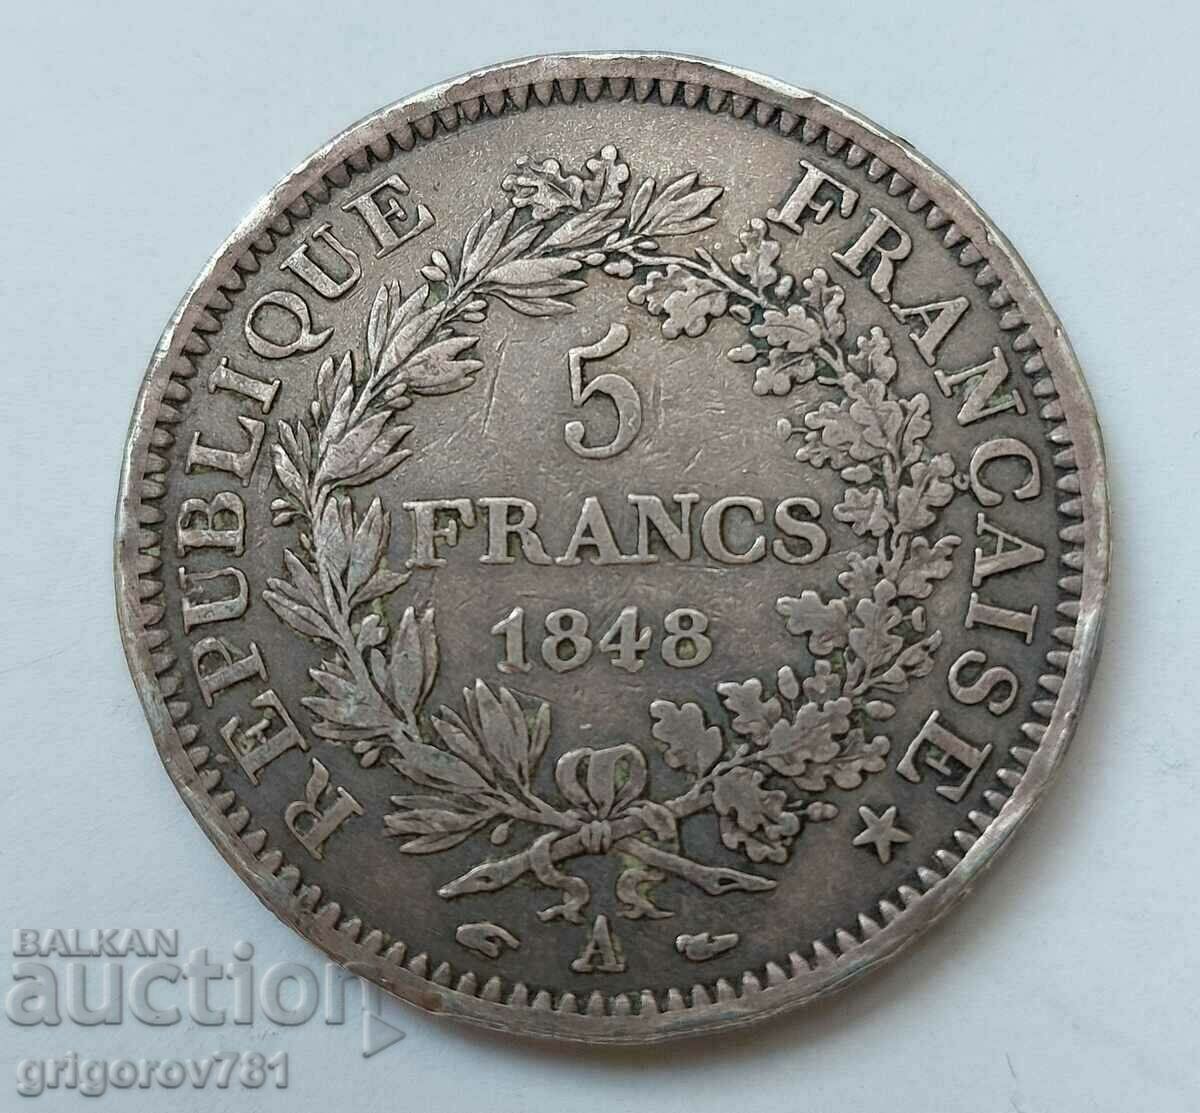 5 Franci Argint Franta 1848 A - Moneda de argint #64